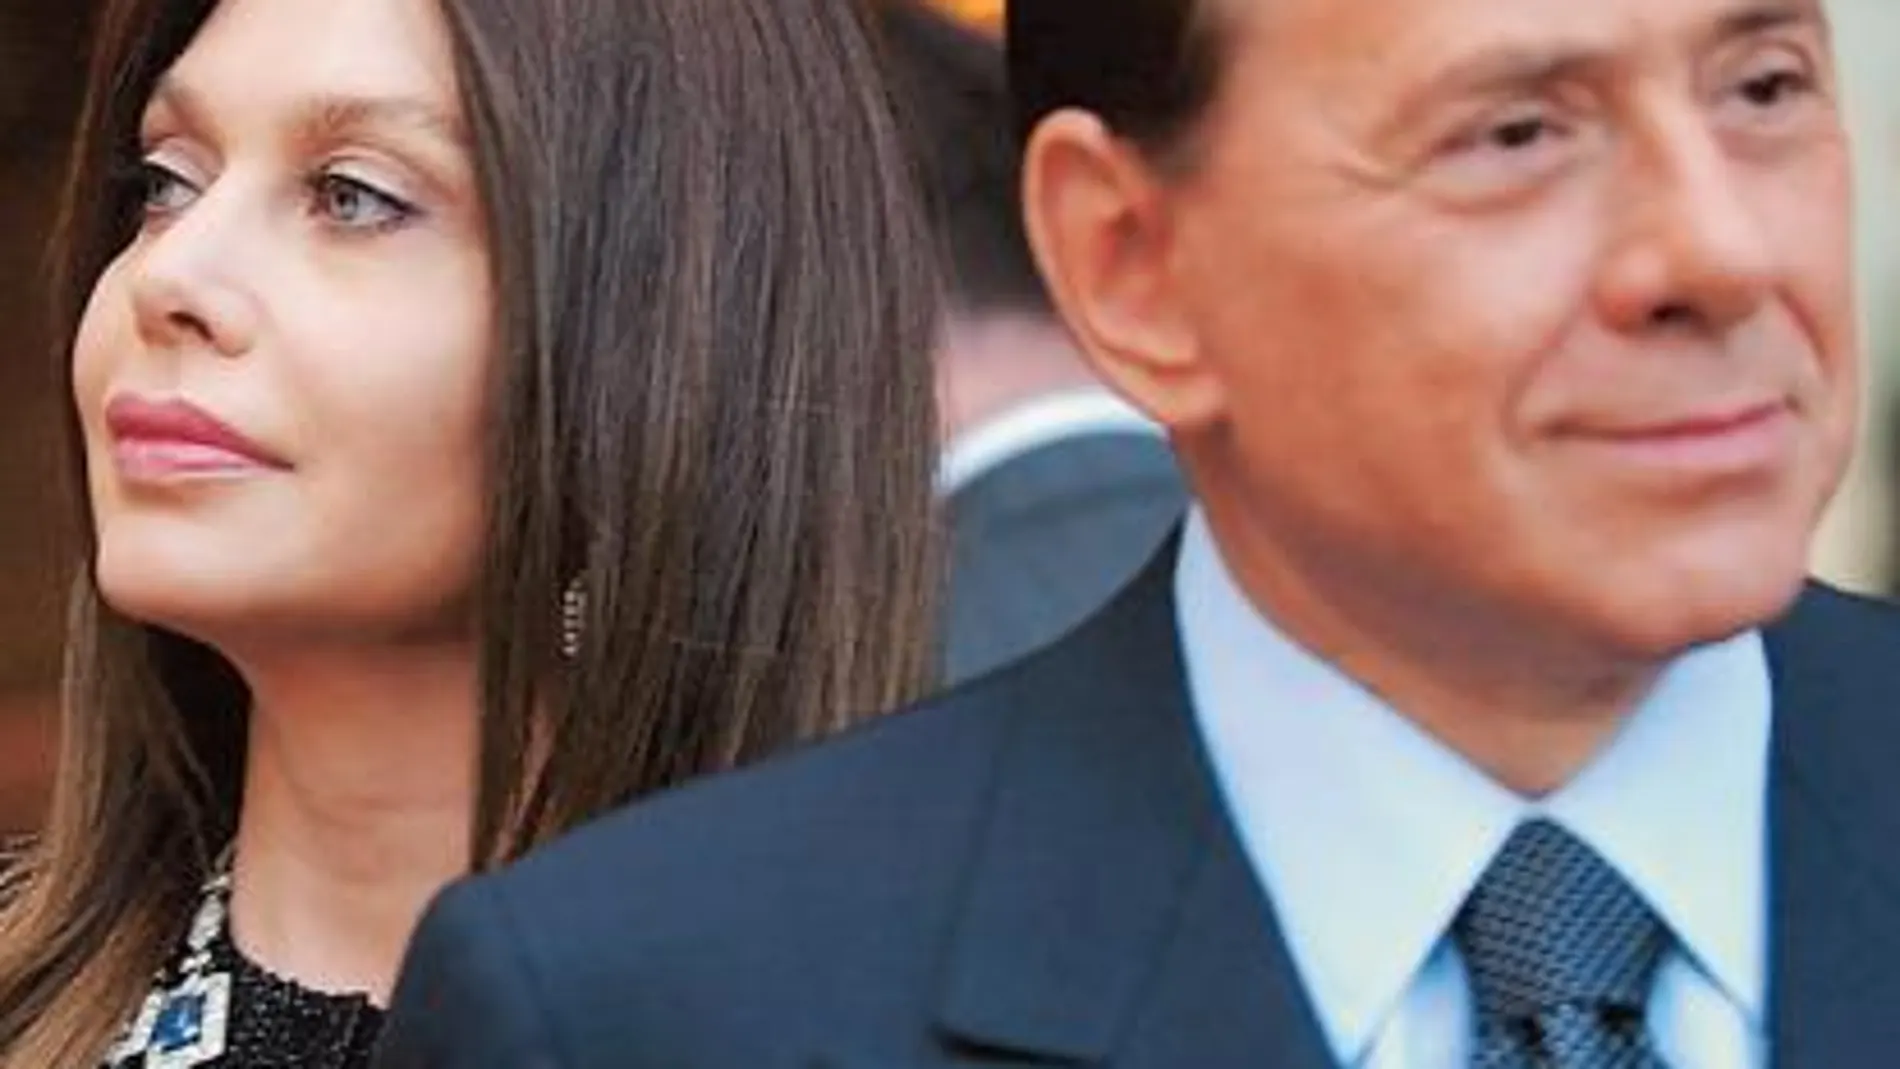 La esposa de Berlusconi pide el divorcio y abre una crisis política